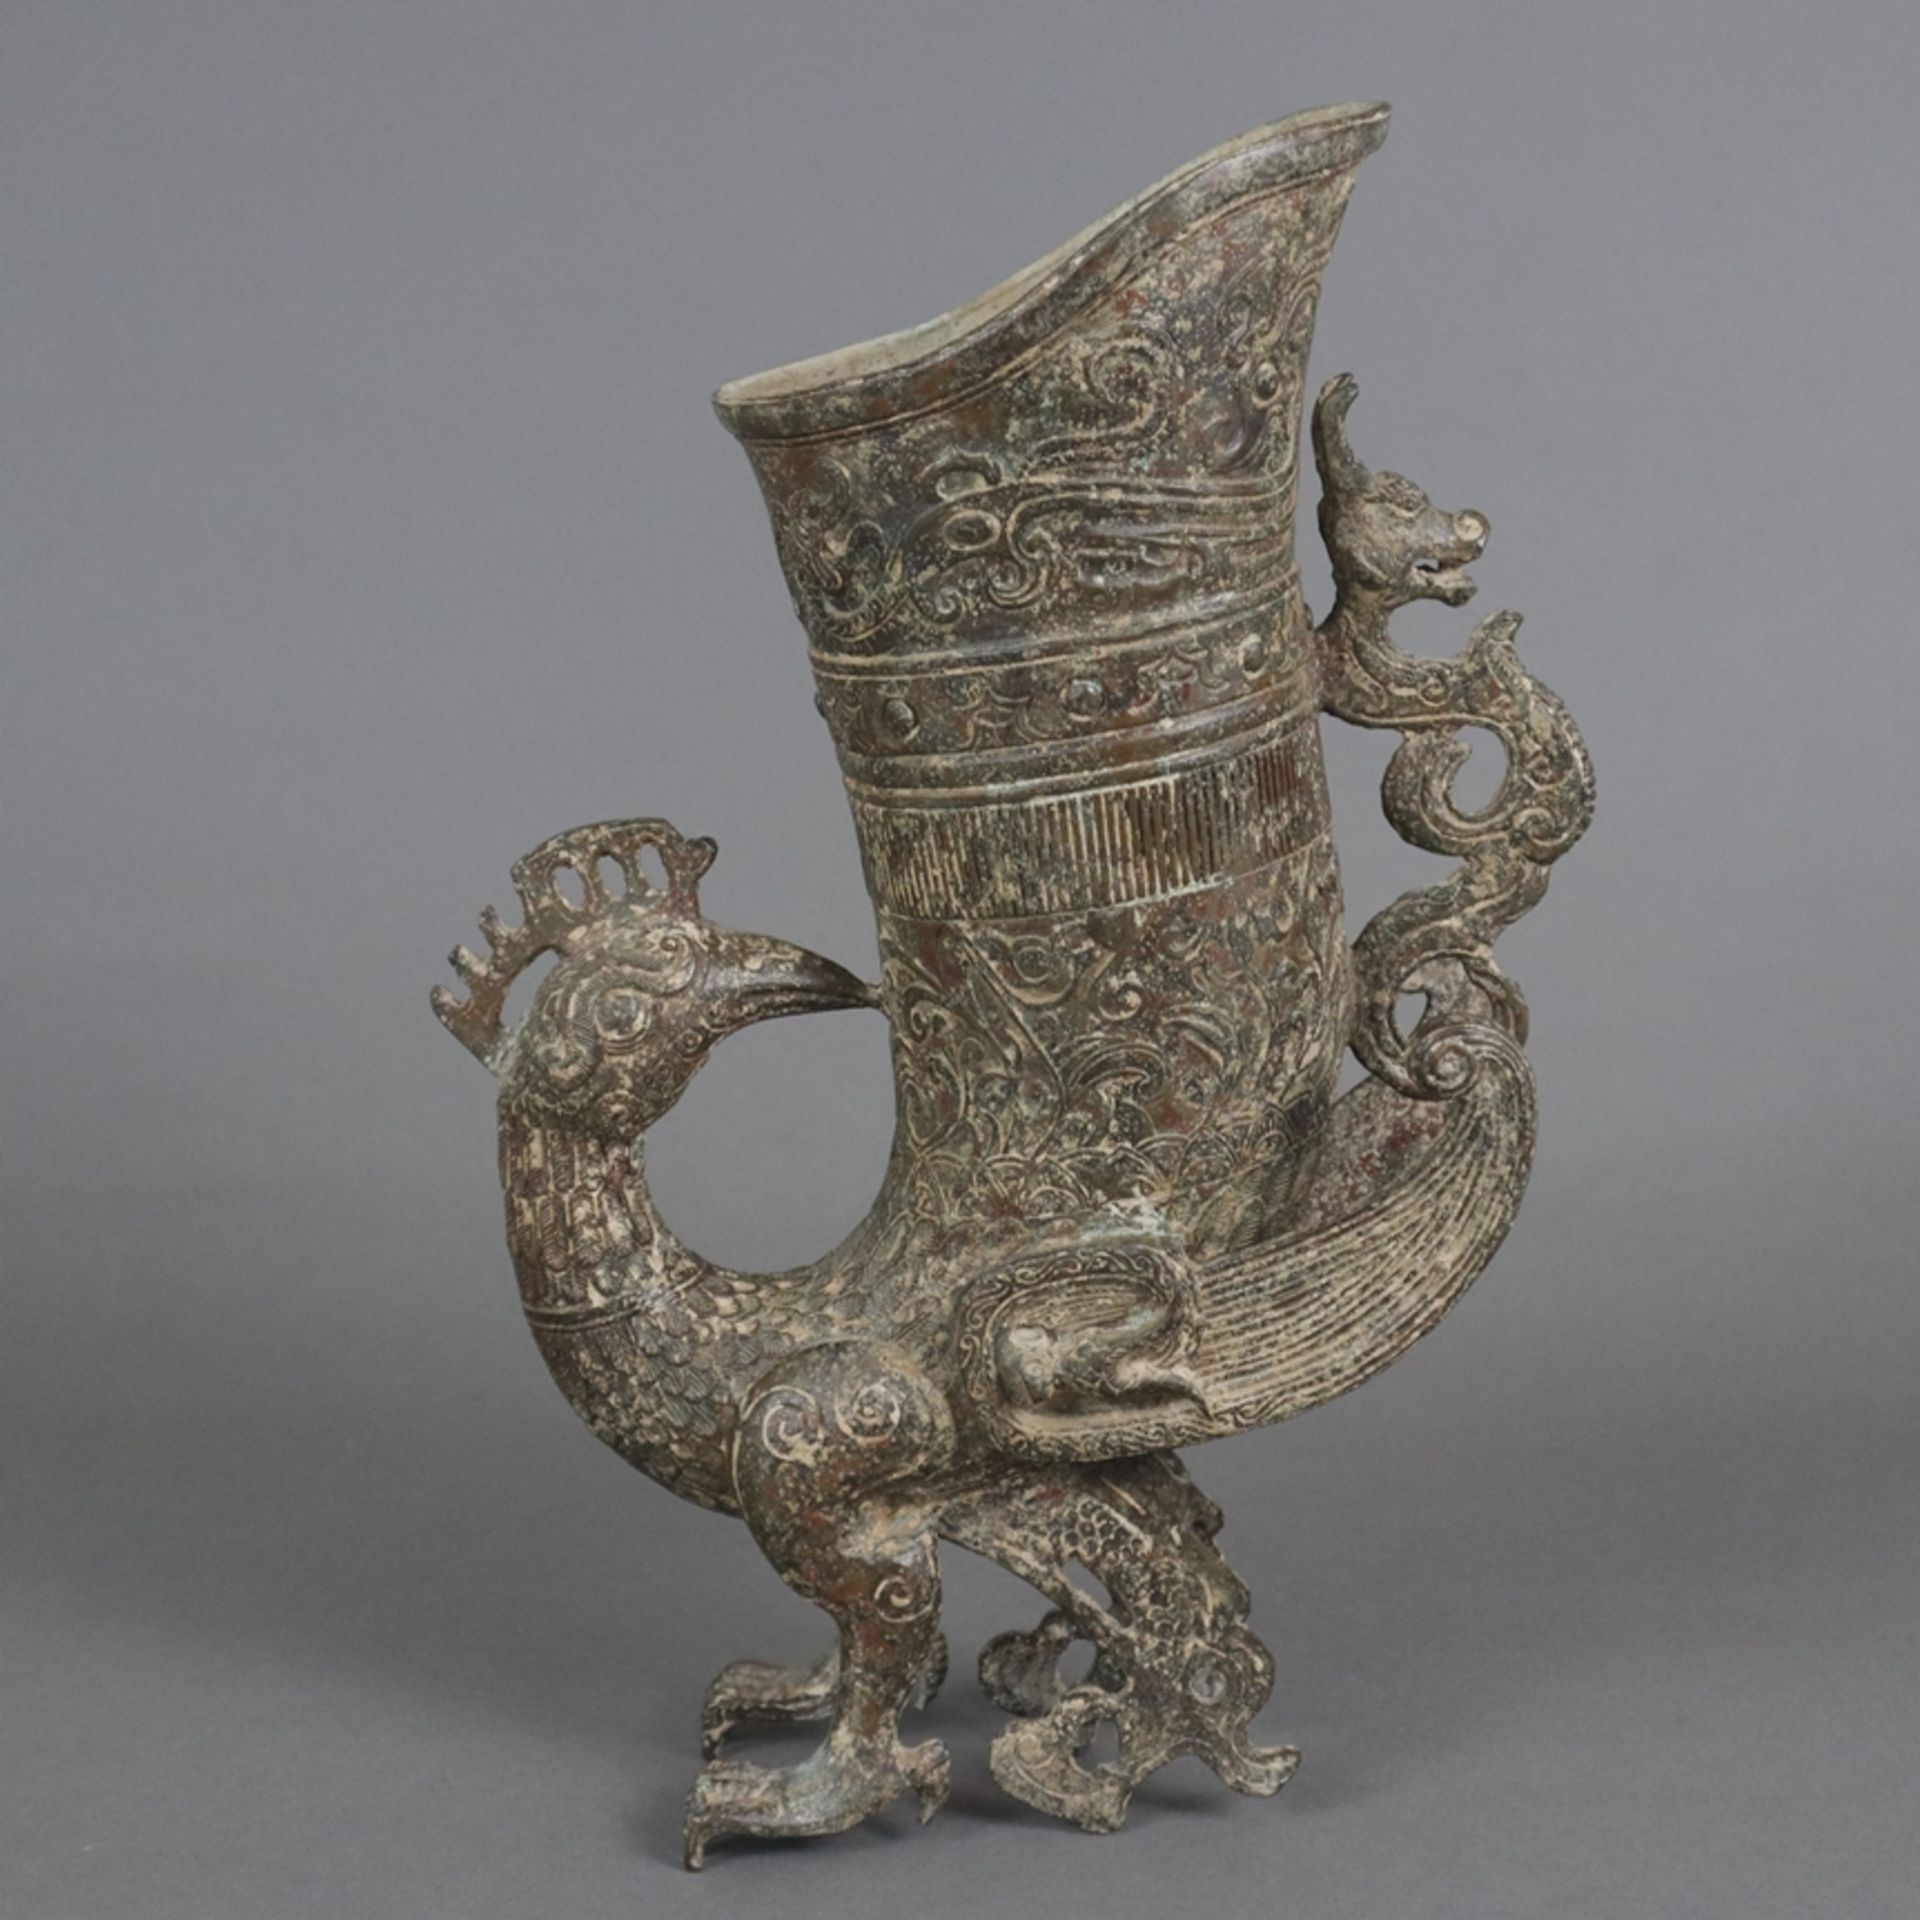 Gefäß in Vogelform - China, in der Art der „zun“-Gefäße aus der Shang-Zeit, gegossene Bronzelegieru